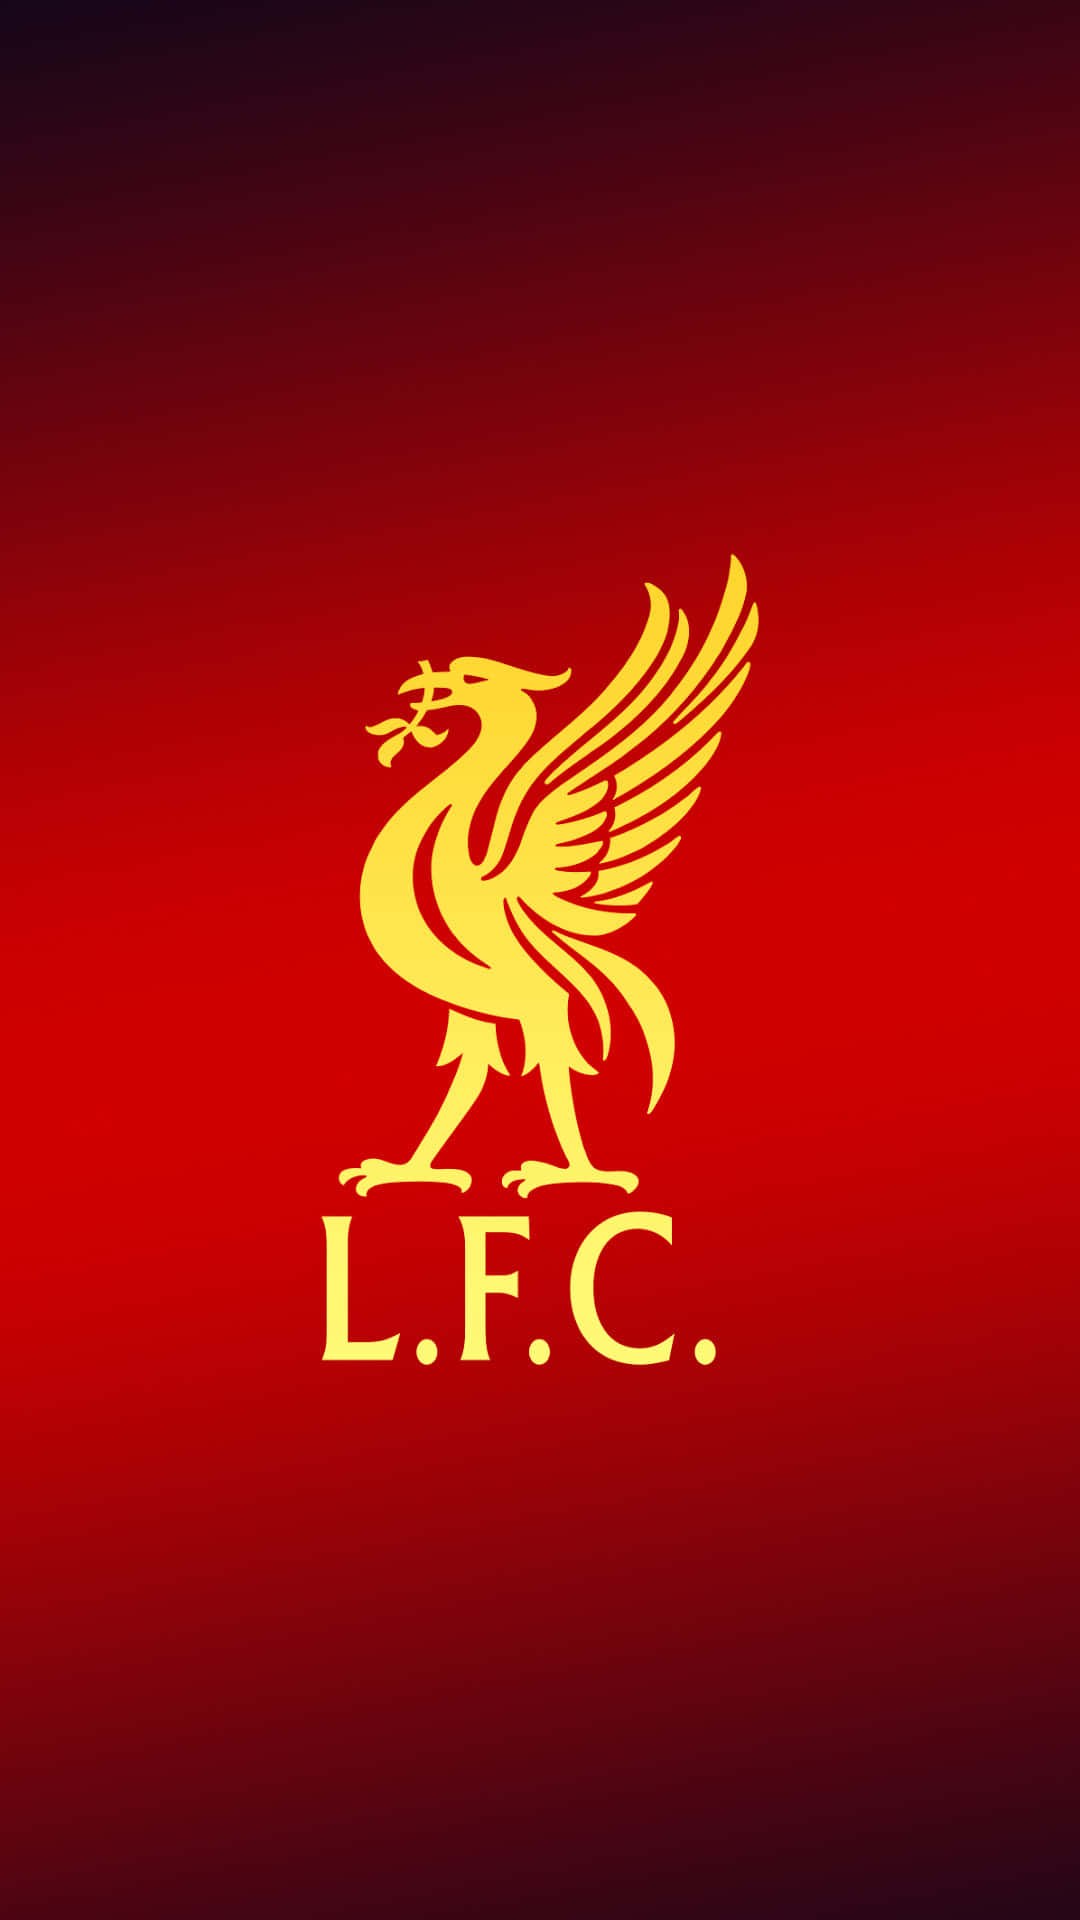 Ellogotipo Oficial Del Liverpool Fc En Un Iphone. Fondo de pantalla